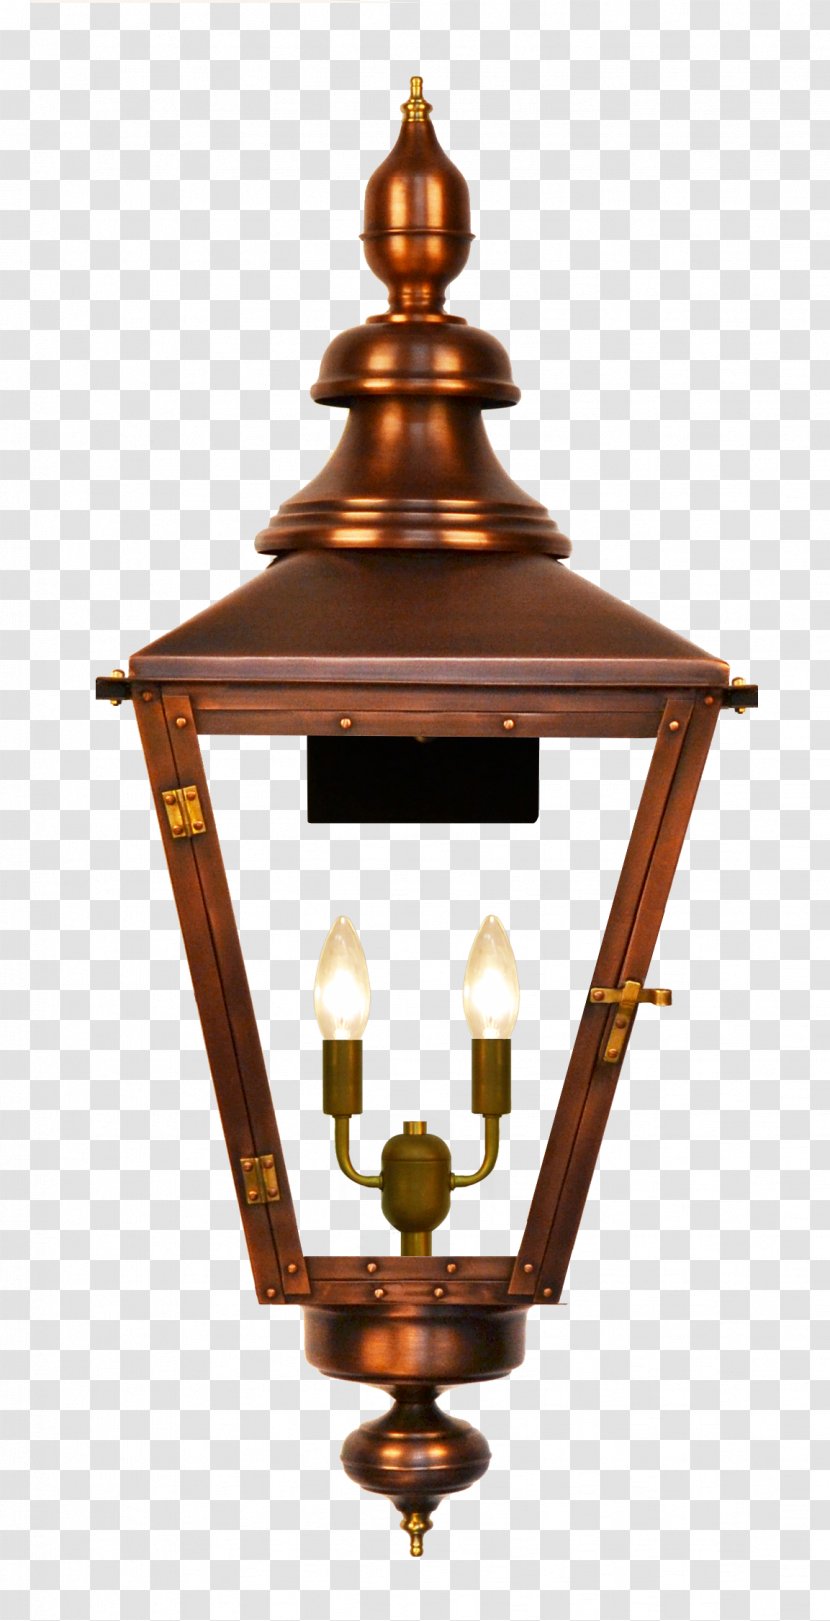 Gas Lighting Lantern Coppersmith - Burner - Kongming Latern Transparent PNG